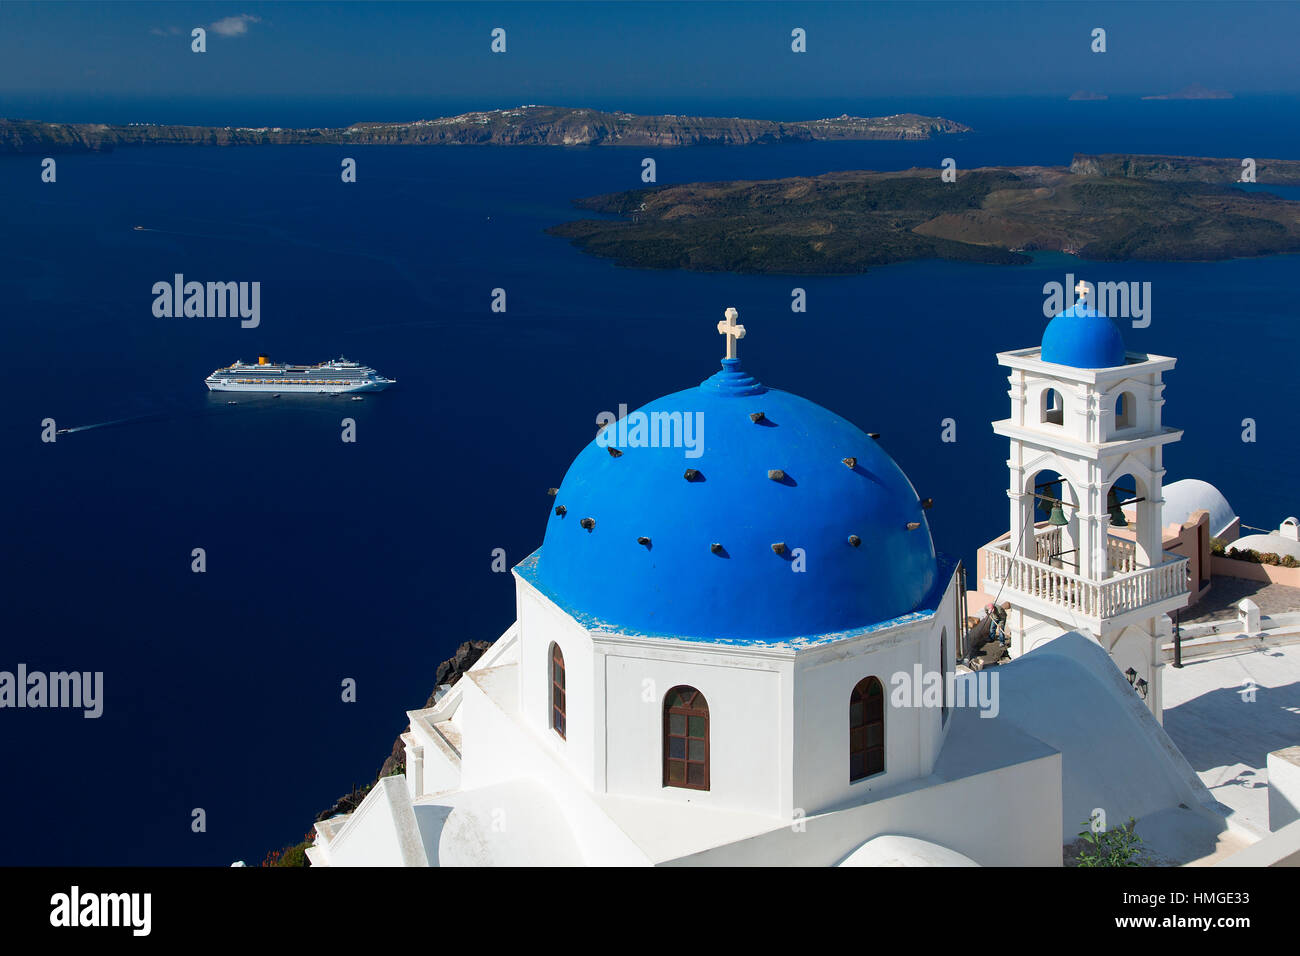 Grecia - Santorini Island, villaggio di olio Foto Stock